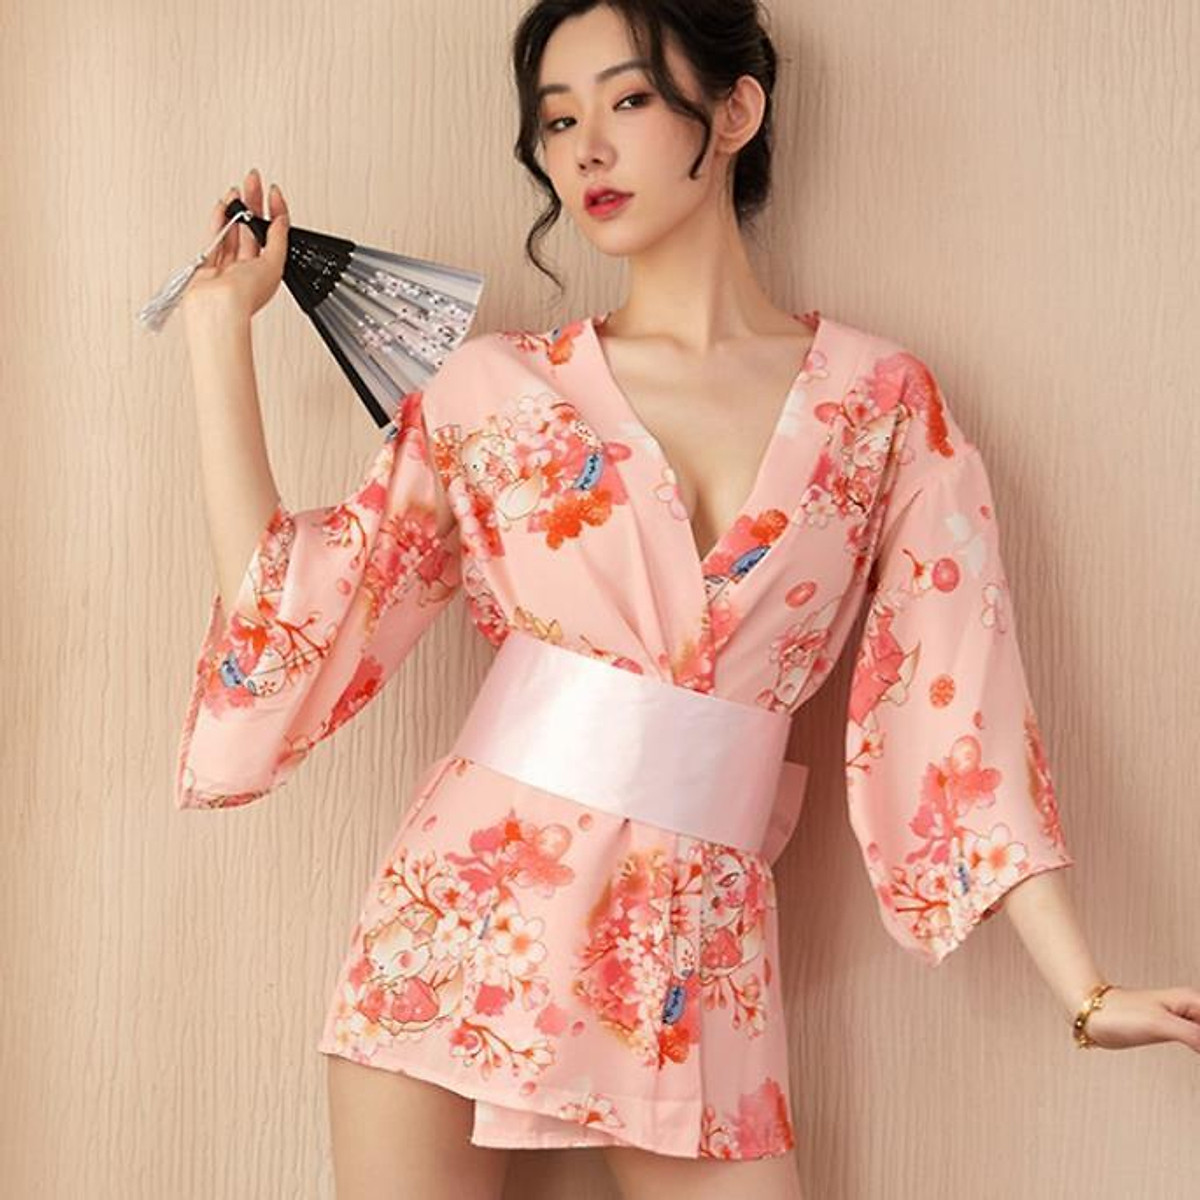 Bộ đồ ngủ kimono quần short hoa dễ thương TK1415 còn xanh  Happyshop